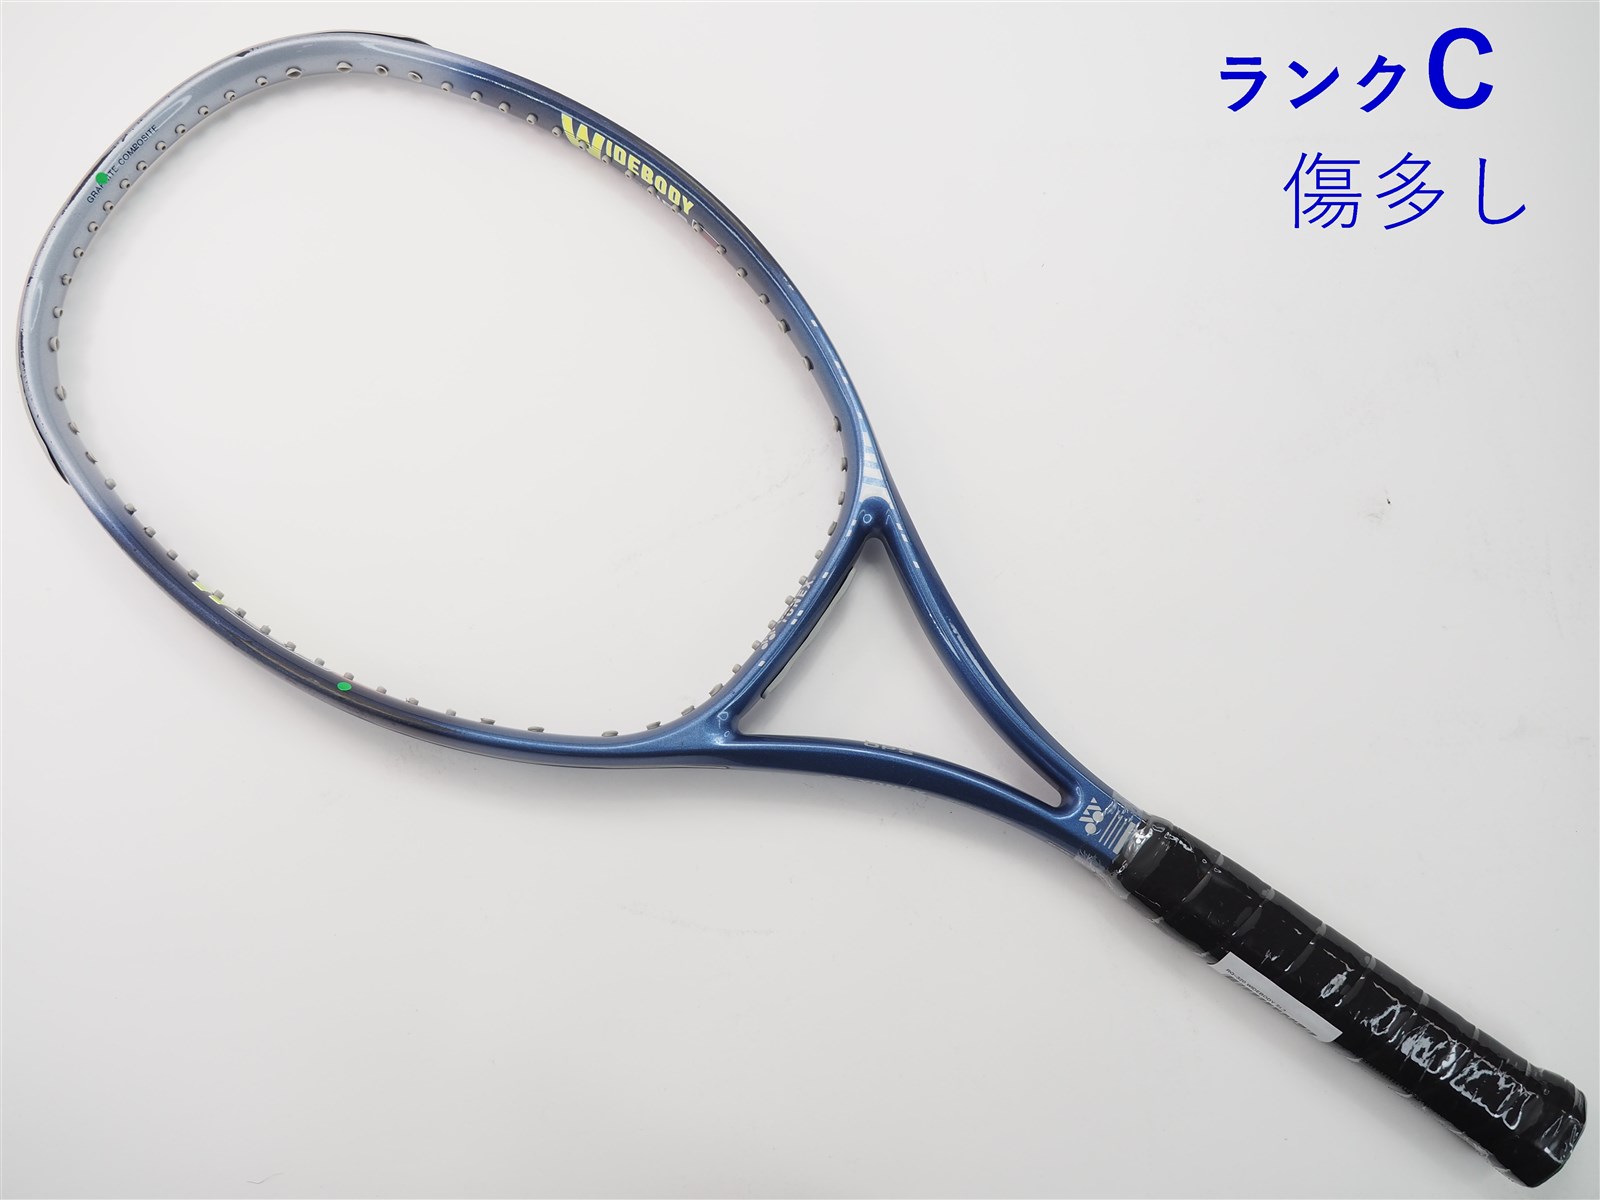 【中古】ヨネックス アールキュー 320 ワイドボディYONEX RQ-320 WIDEBODY(SL3)【中古 テニスラケット】の通販・販売|  ヨネックス| テニスサポートセンターへ